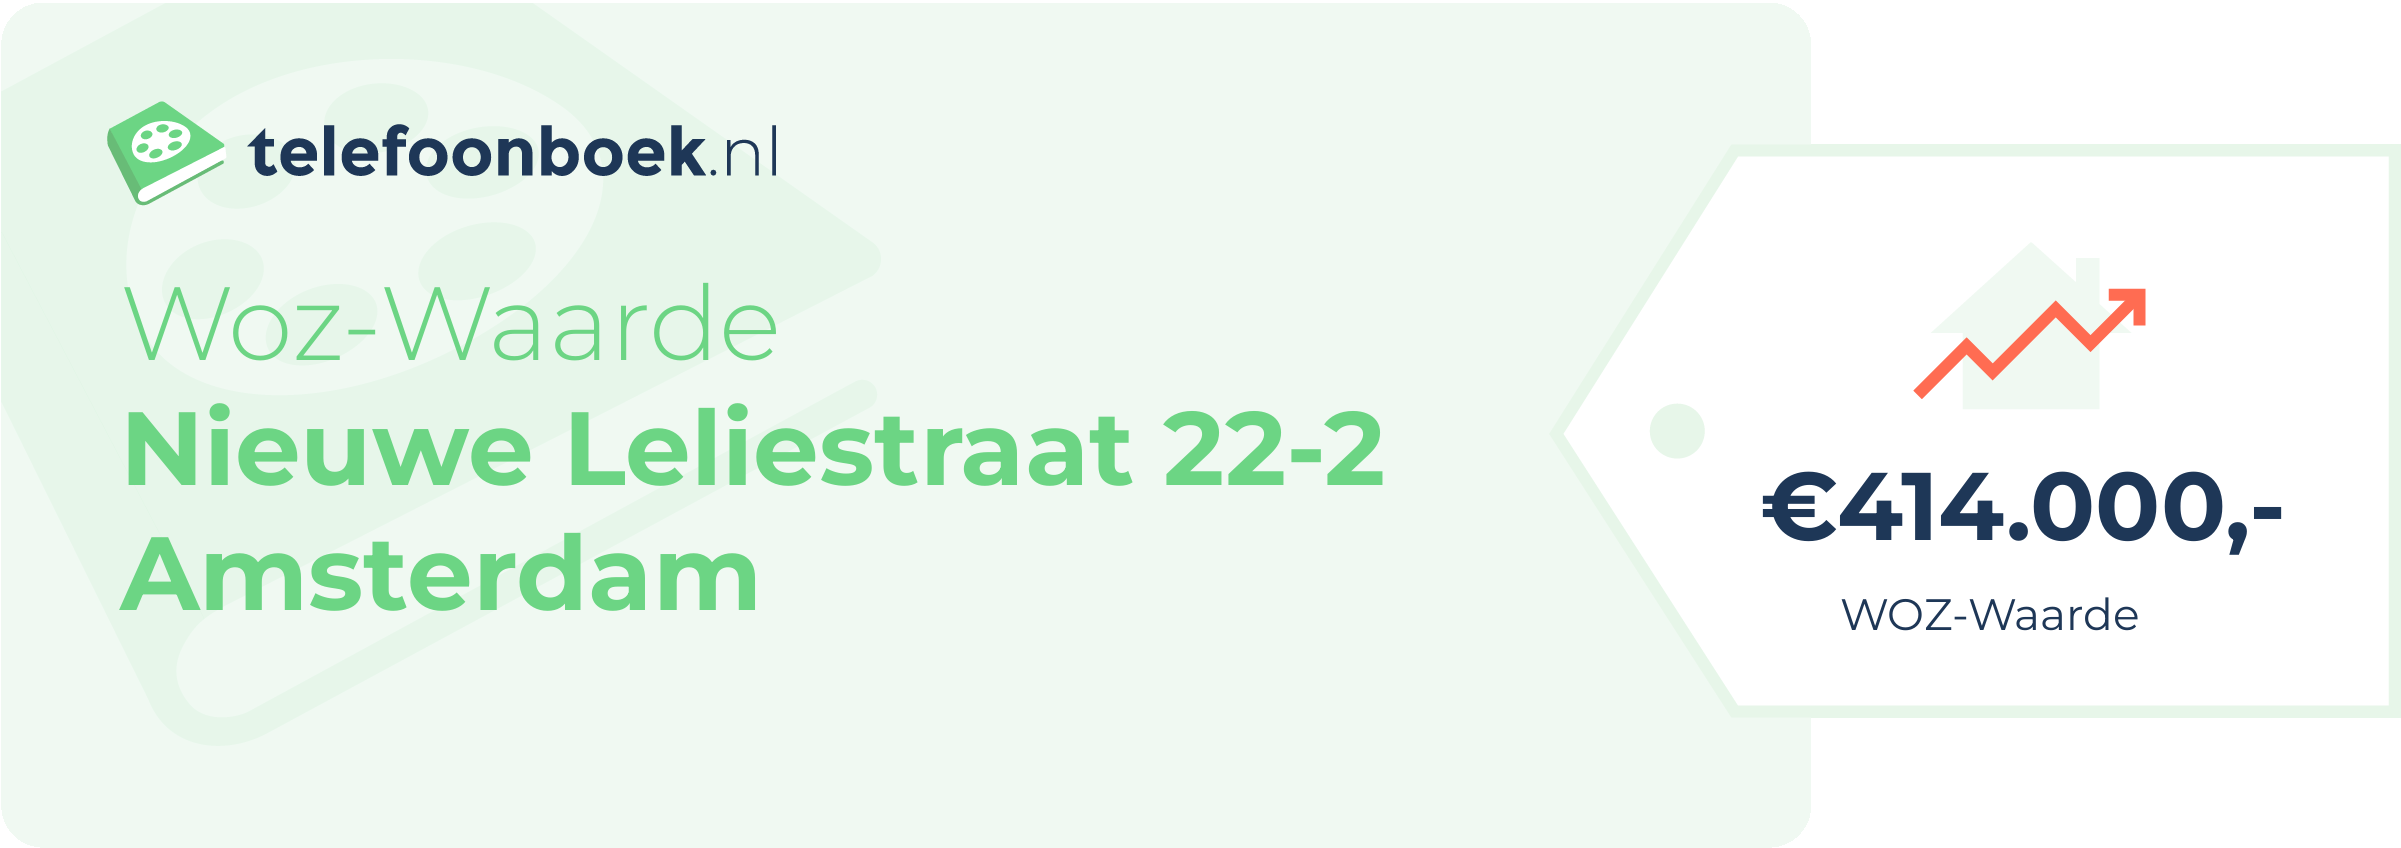 WOZ-waarde Nieuwe Leliestraat 22-2 Amsterdam